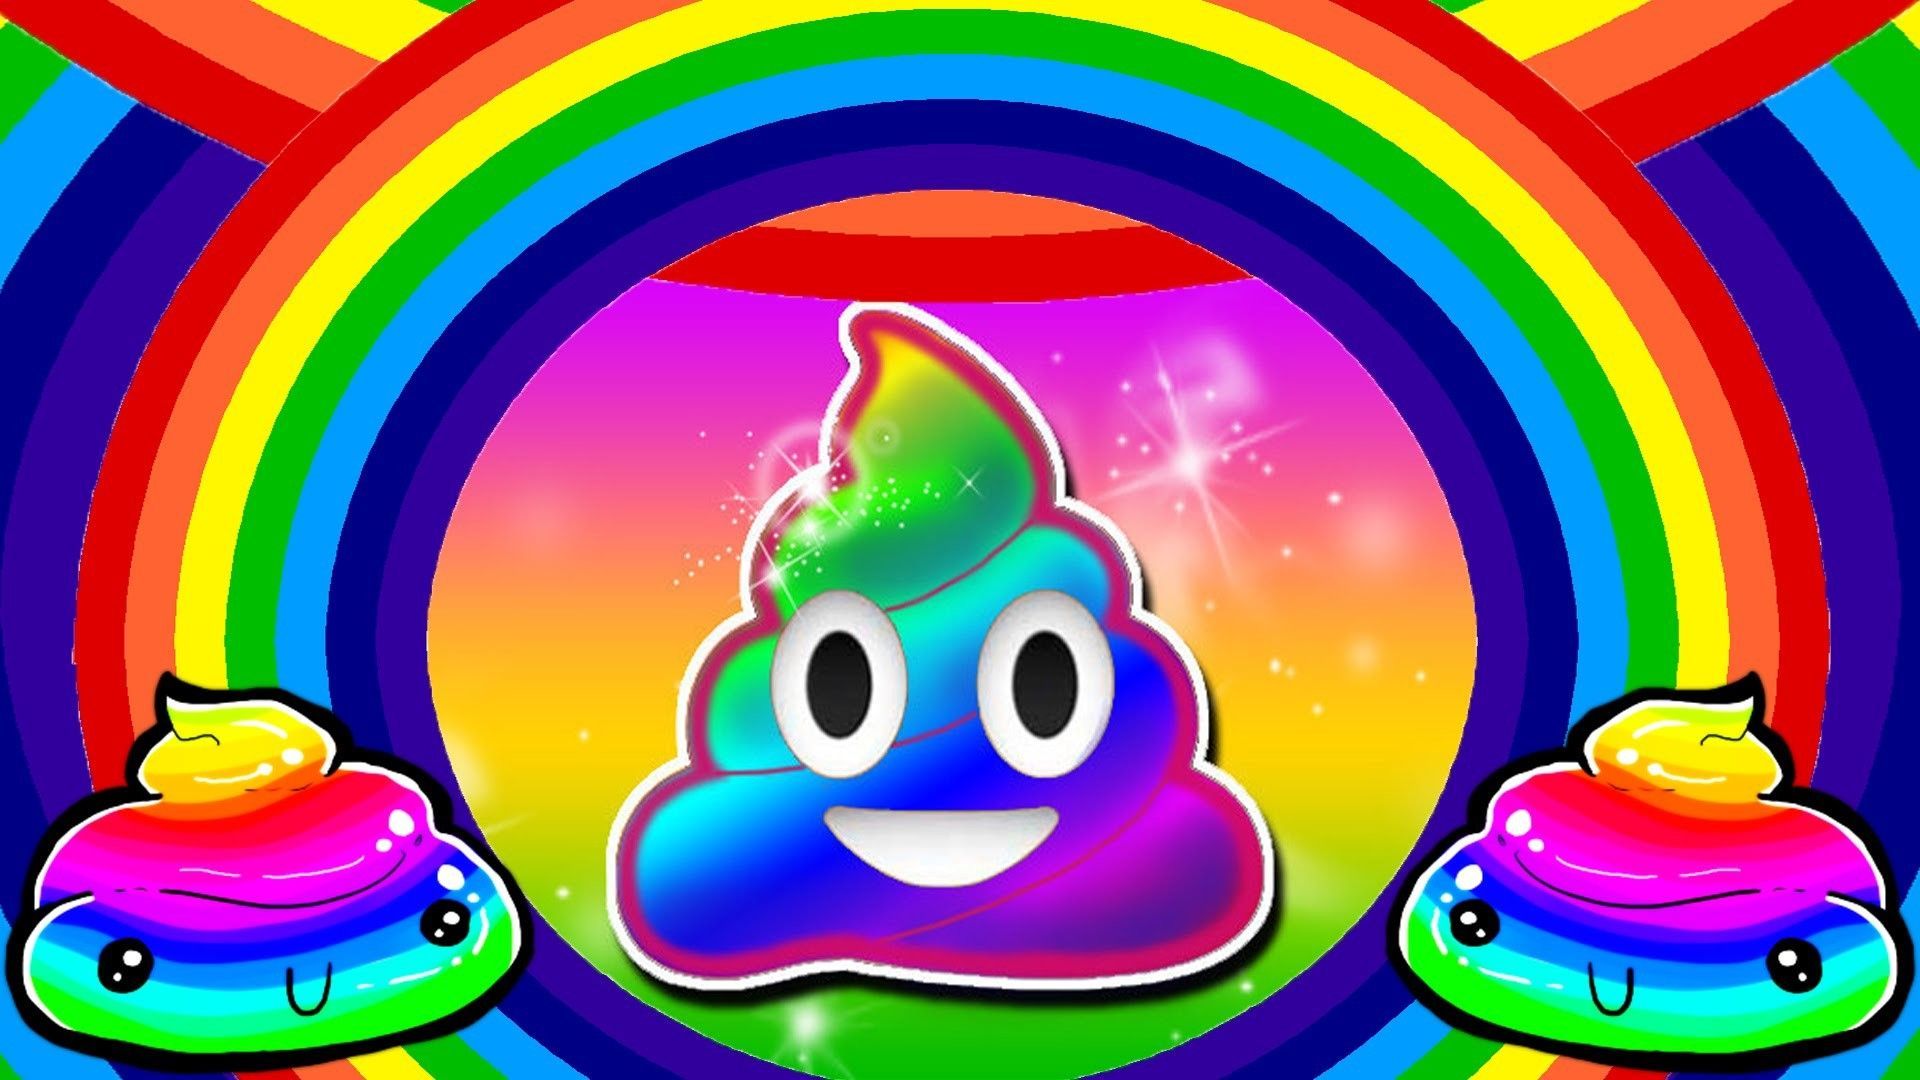 Poop Emoji Wallpaper Free Poop Emoji Background